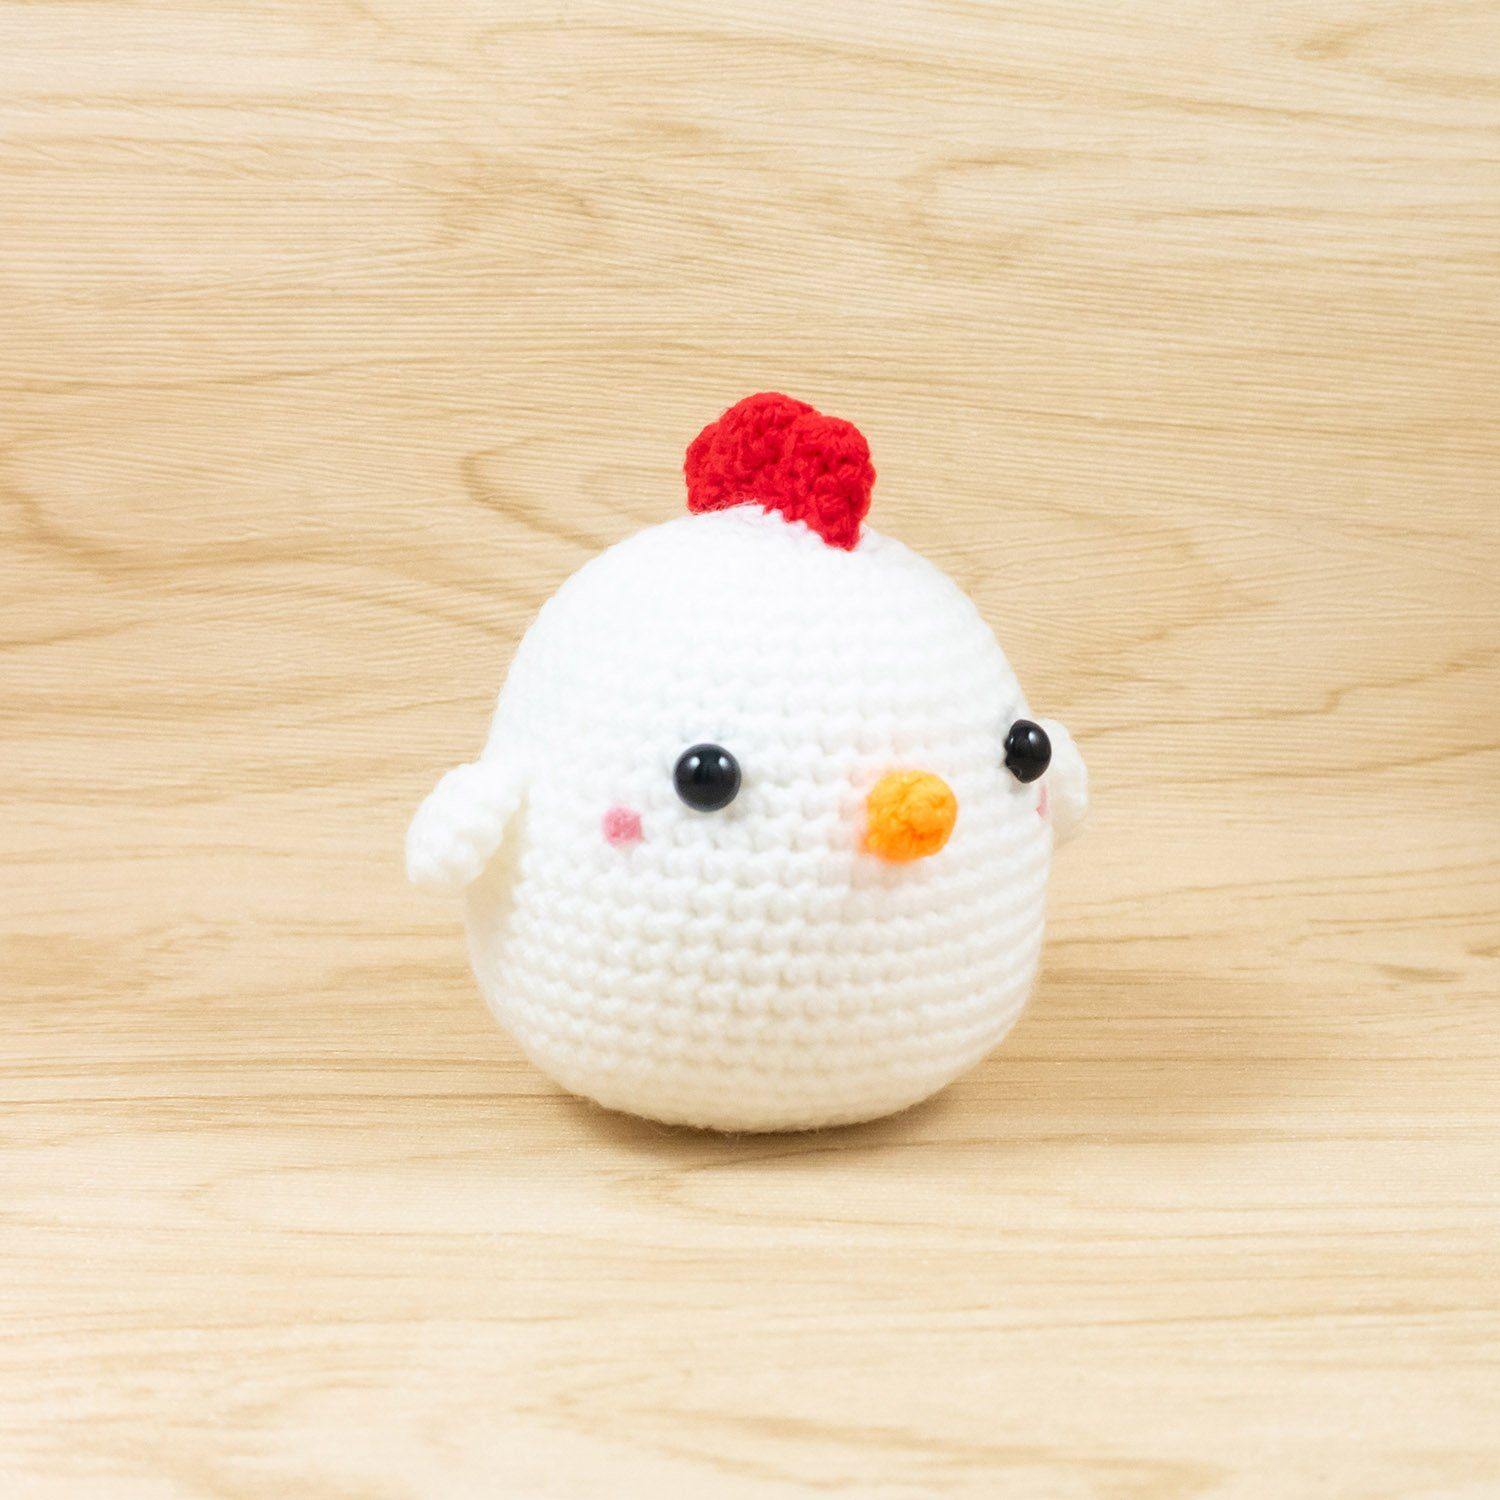 Handmade chicken doll crochet pattern